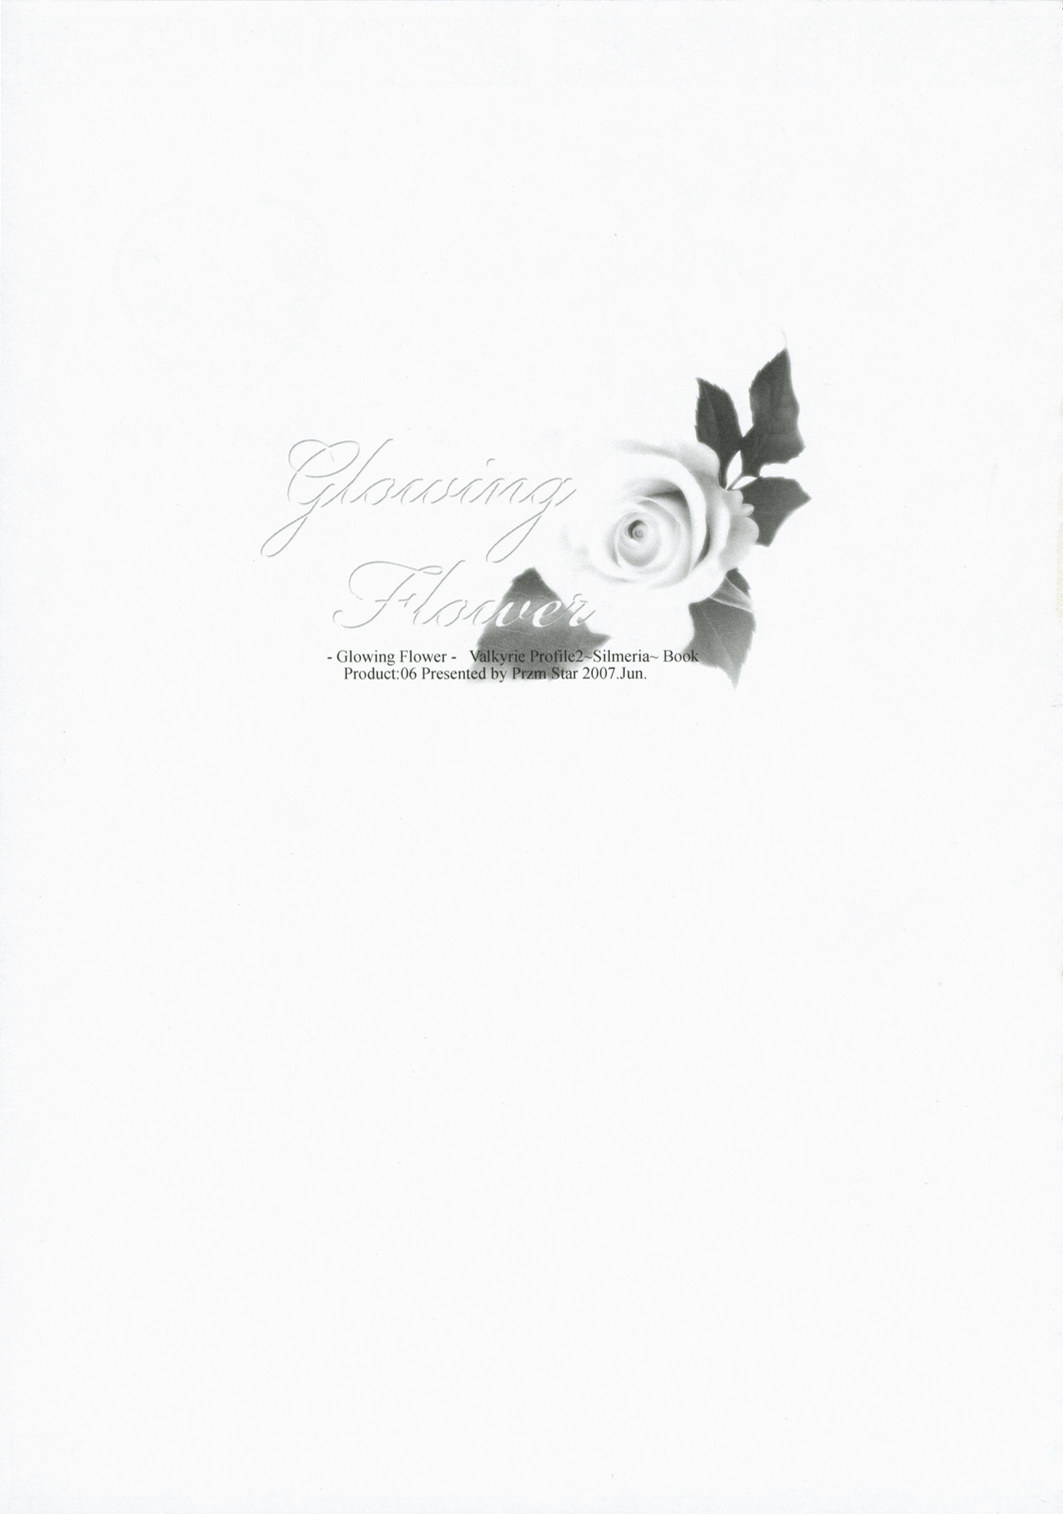 [Przm Star] [2007-06-17] [SC36] Glowing Flower 